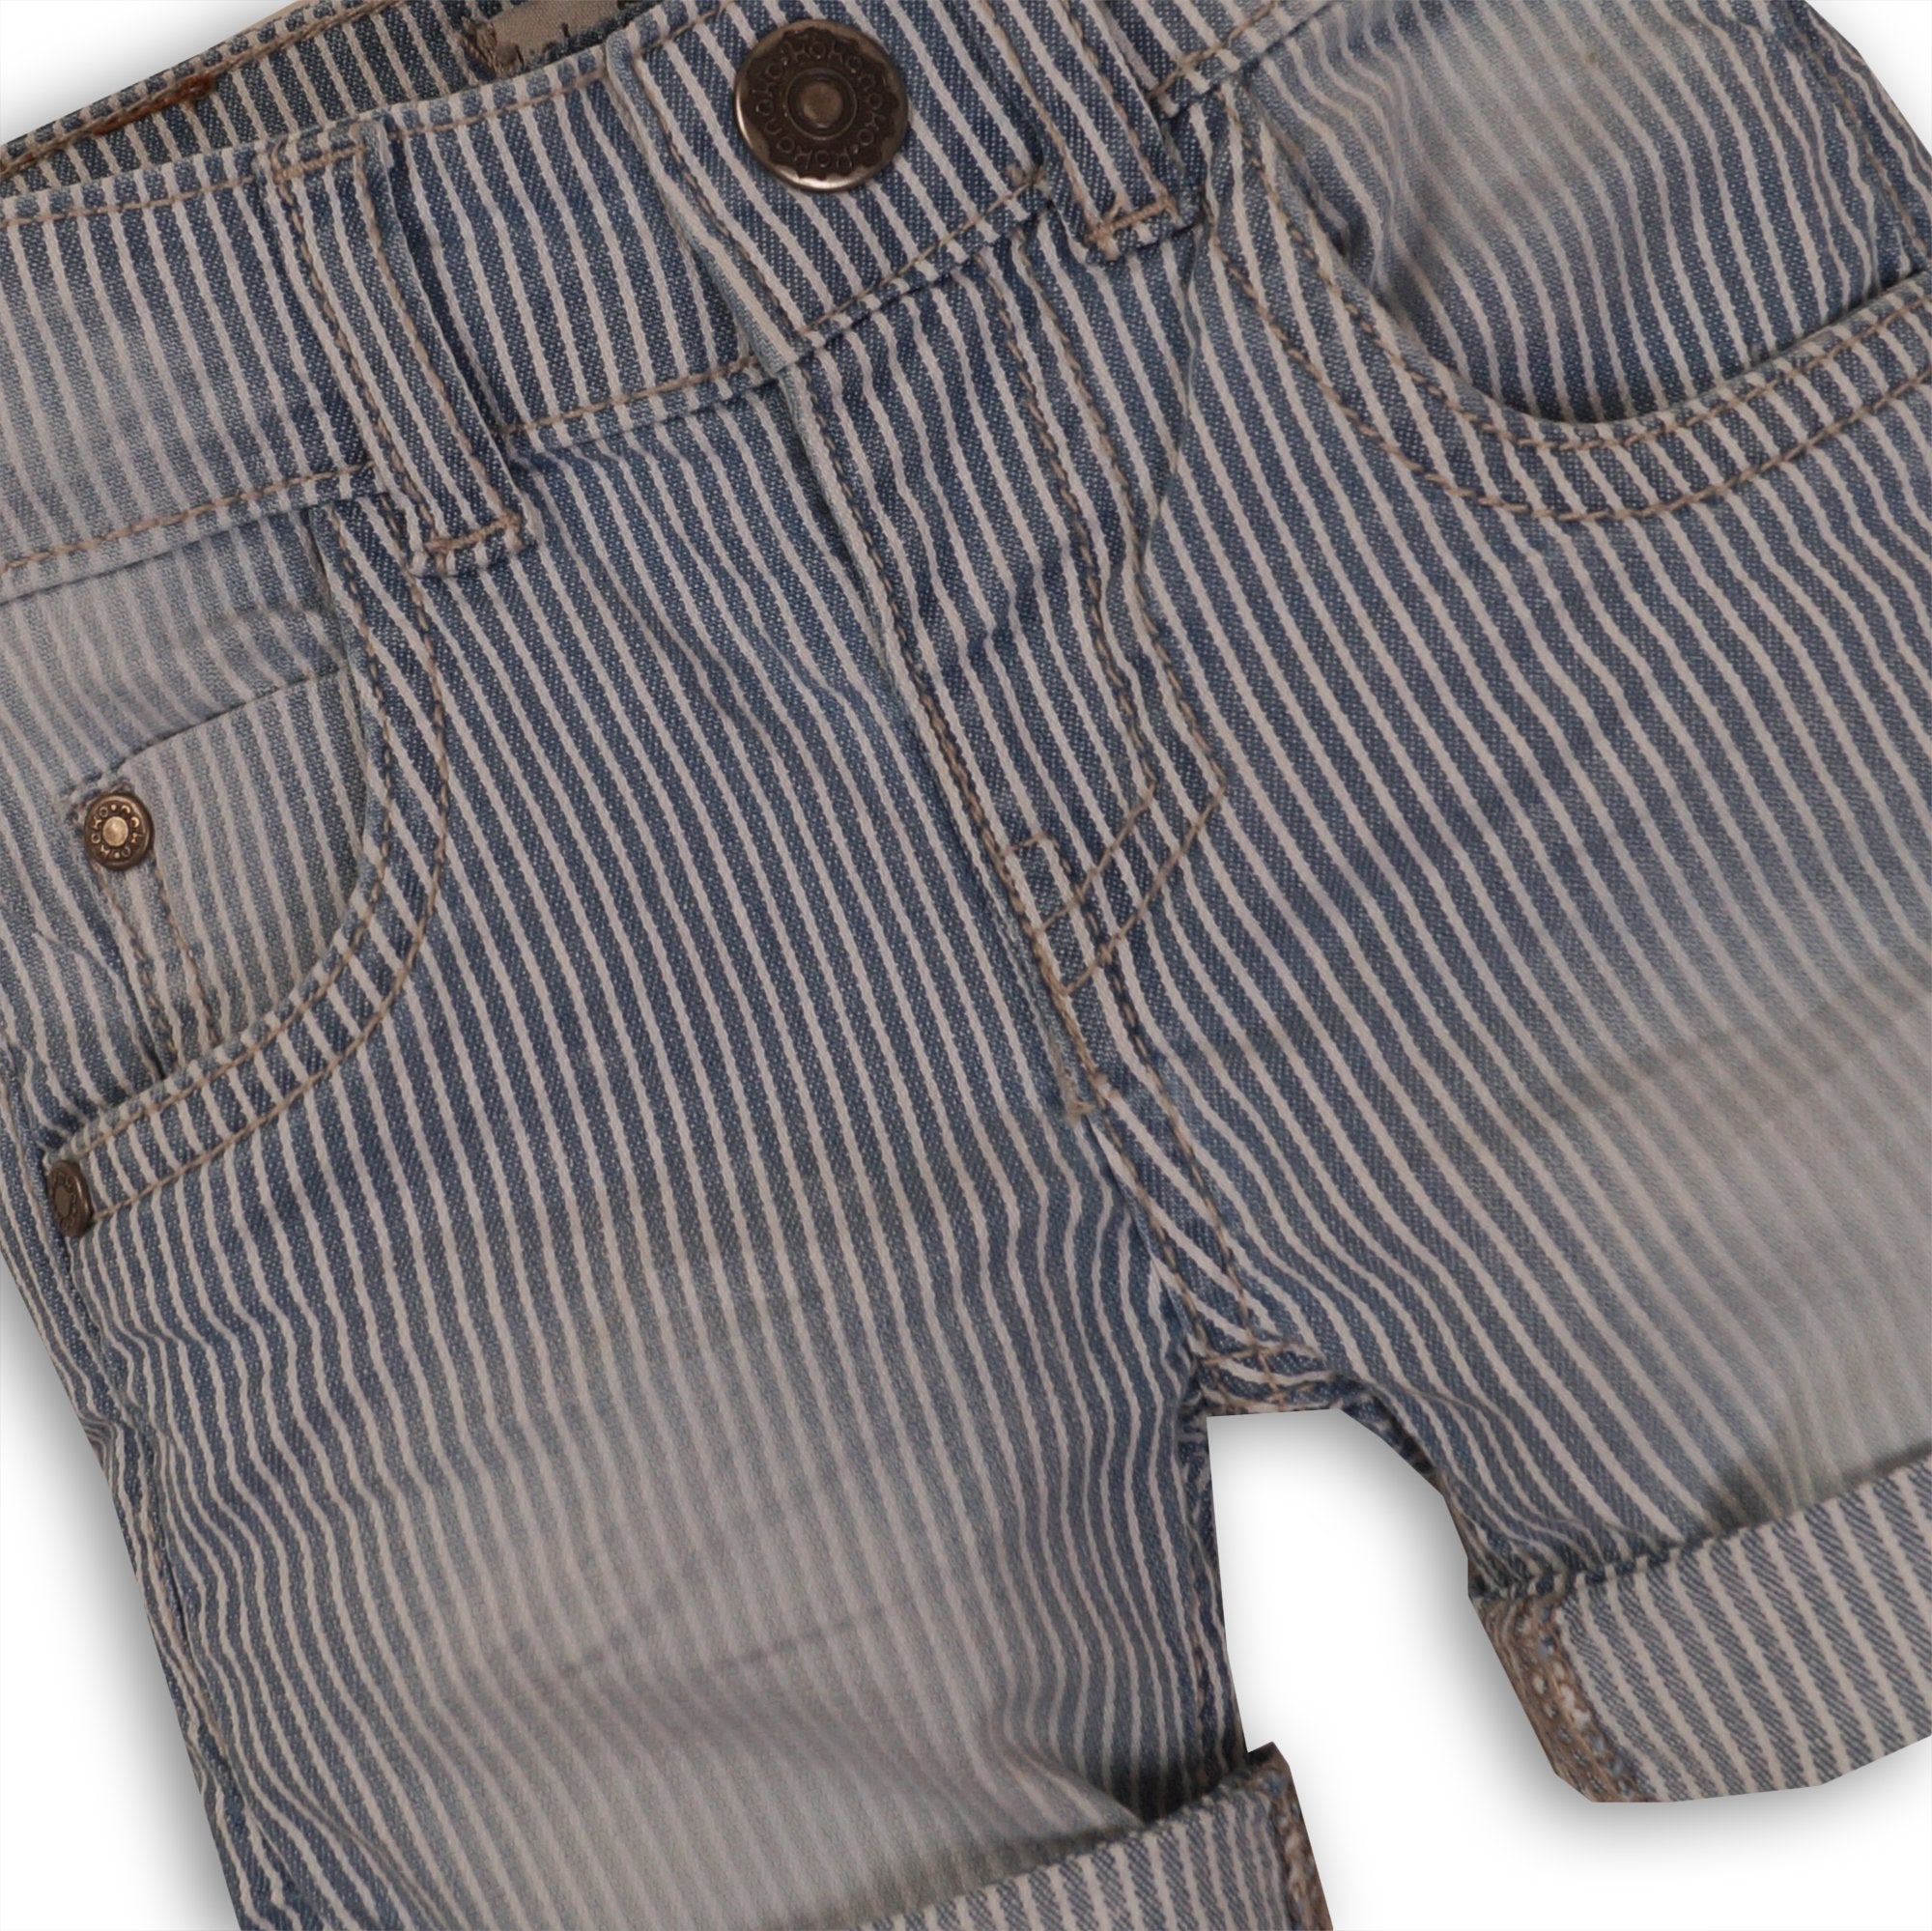 Baby Jongens Baby jeans short van Koko Noko  in de kleur Denim stripe in maat 86.